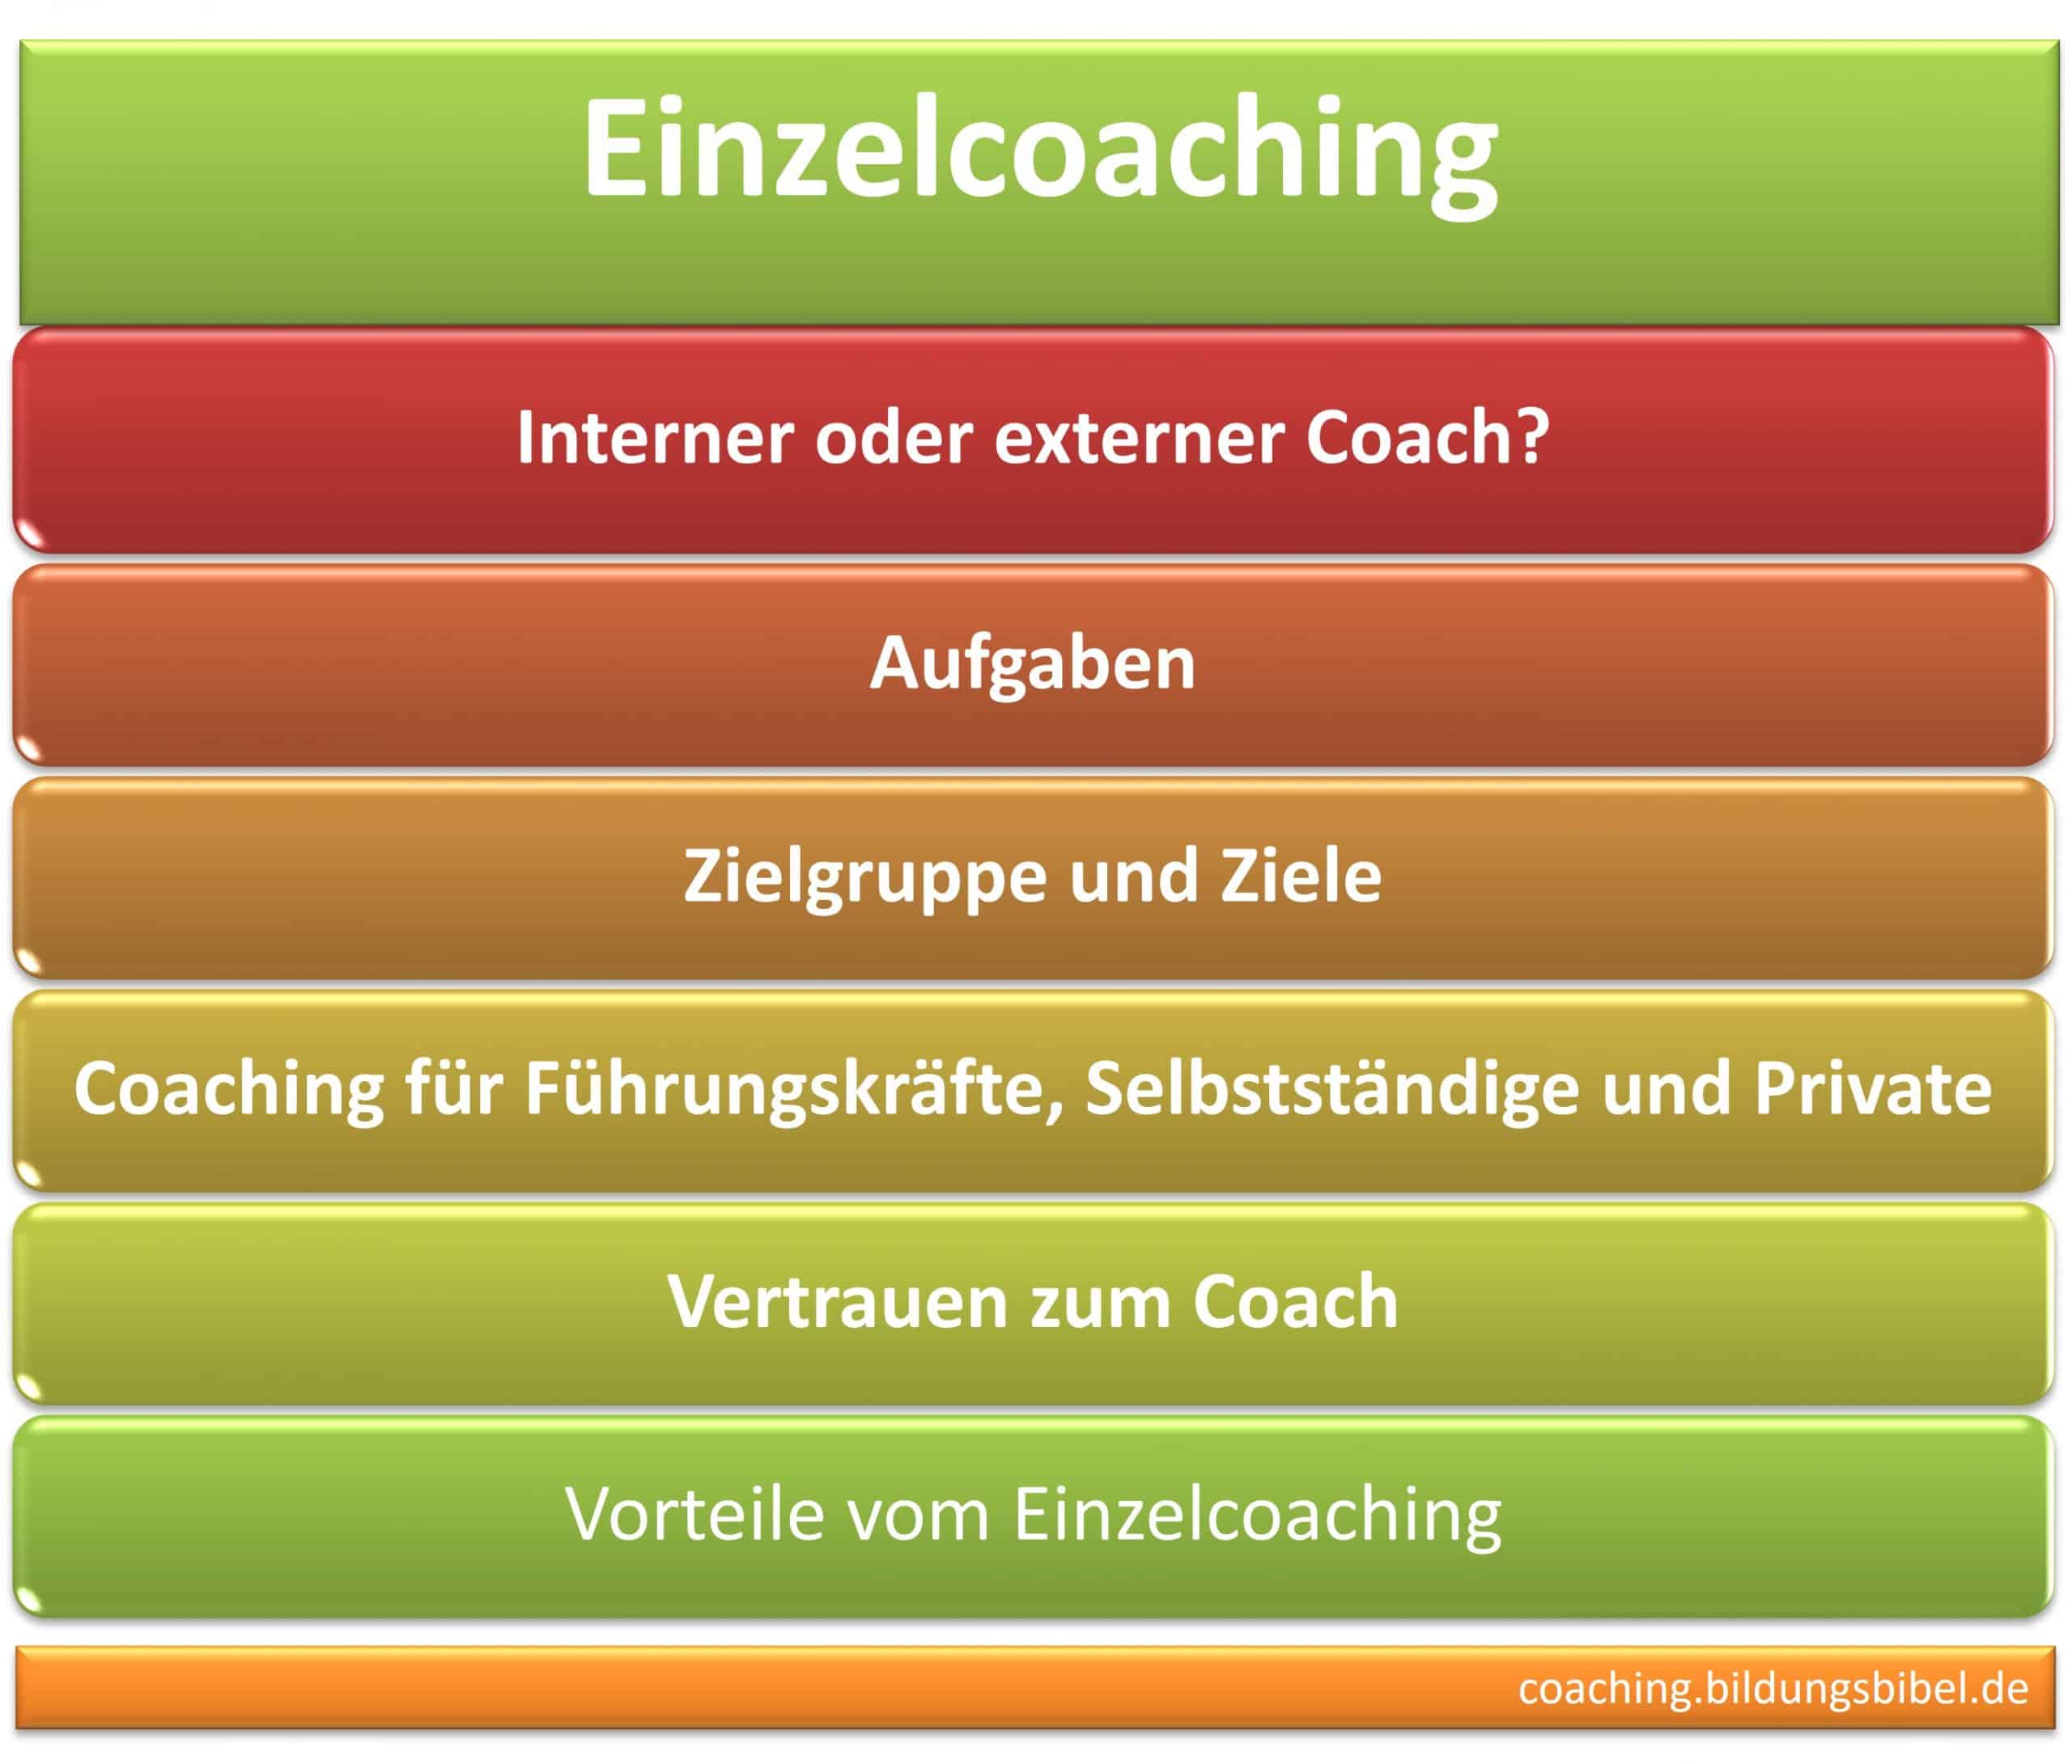 Einzelcoaching interner o. externer Coach, Aufgaben, Zielgruppe, Ziele, Führung, Selbstständige, Privat, Vertrauen u. Vorteile.